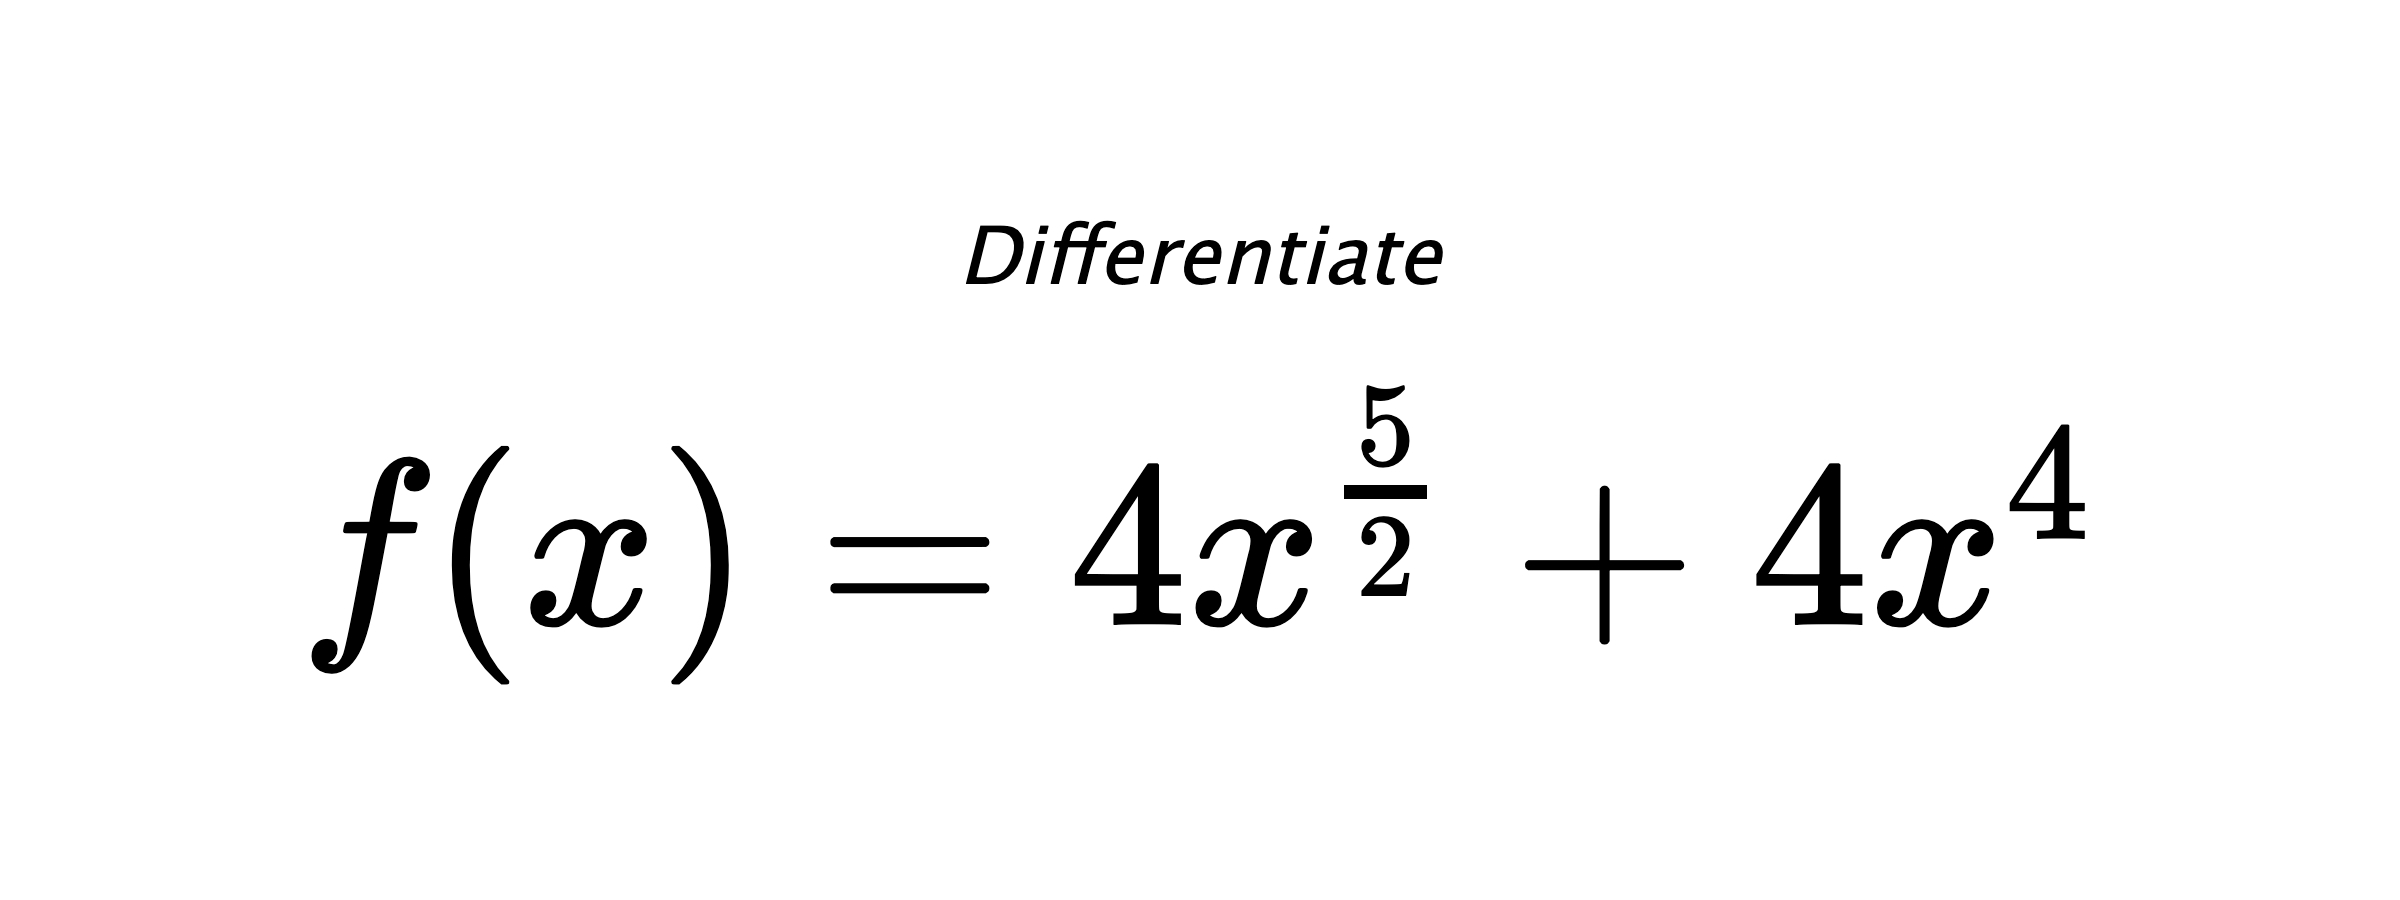 Differentiate $ f(x) = 4 x^{\frac{5}{2}} + 4 x^{4} $